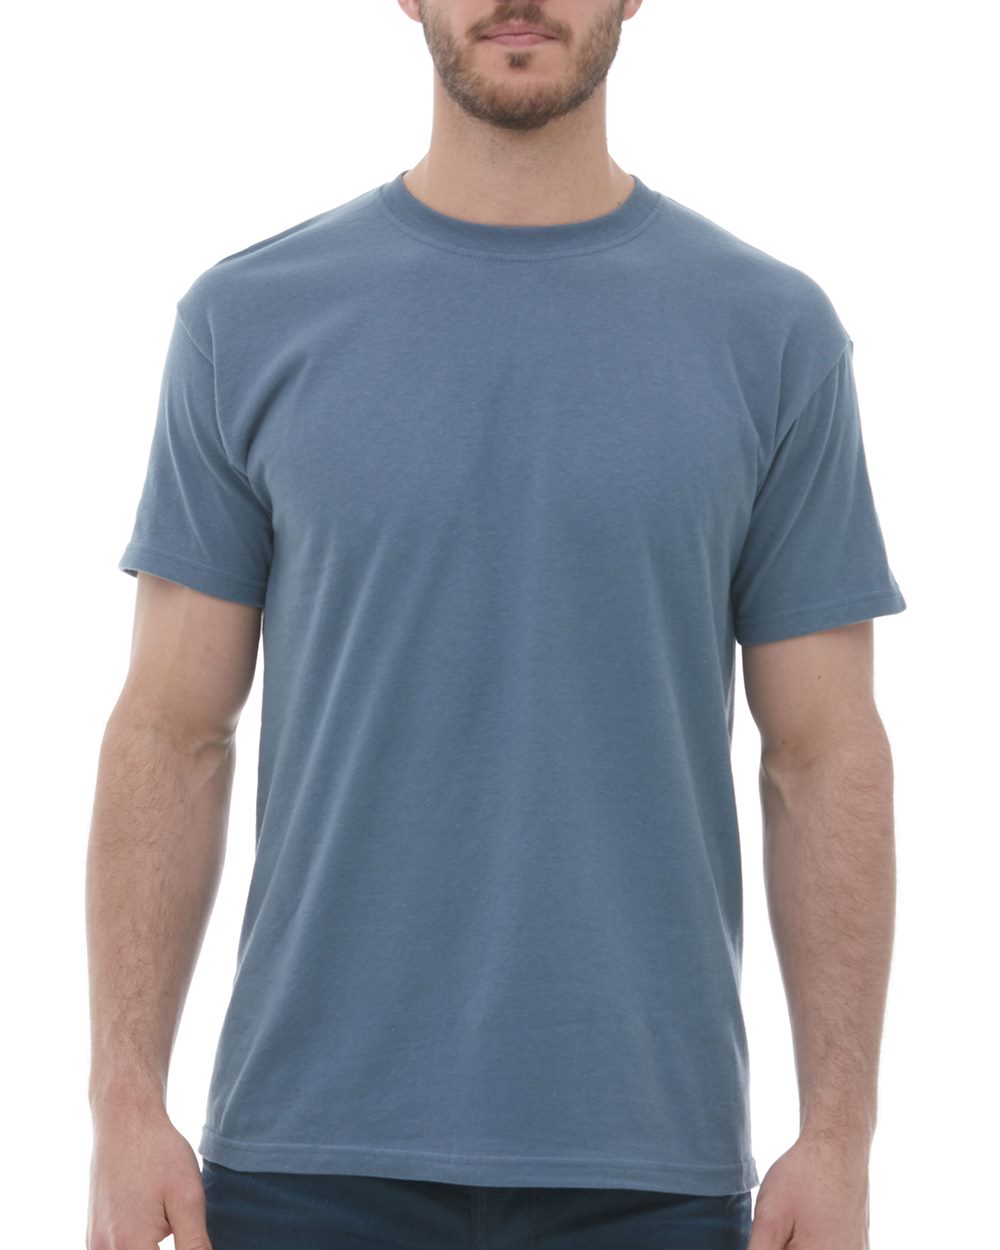 M&O Knits - Tops & T-shirts, Short sleeved T-shirts